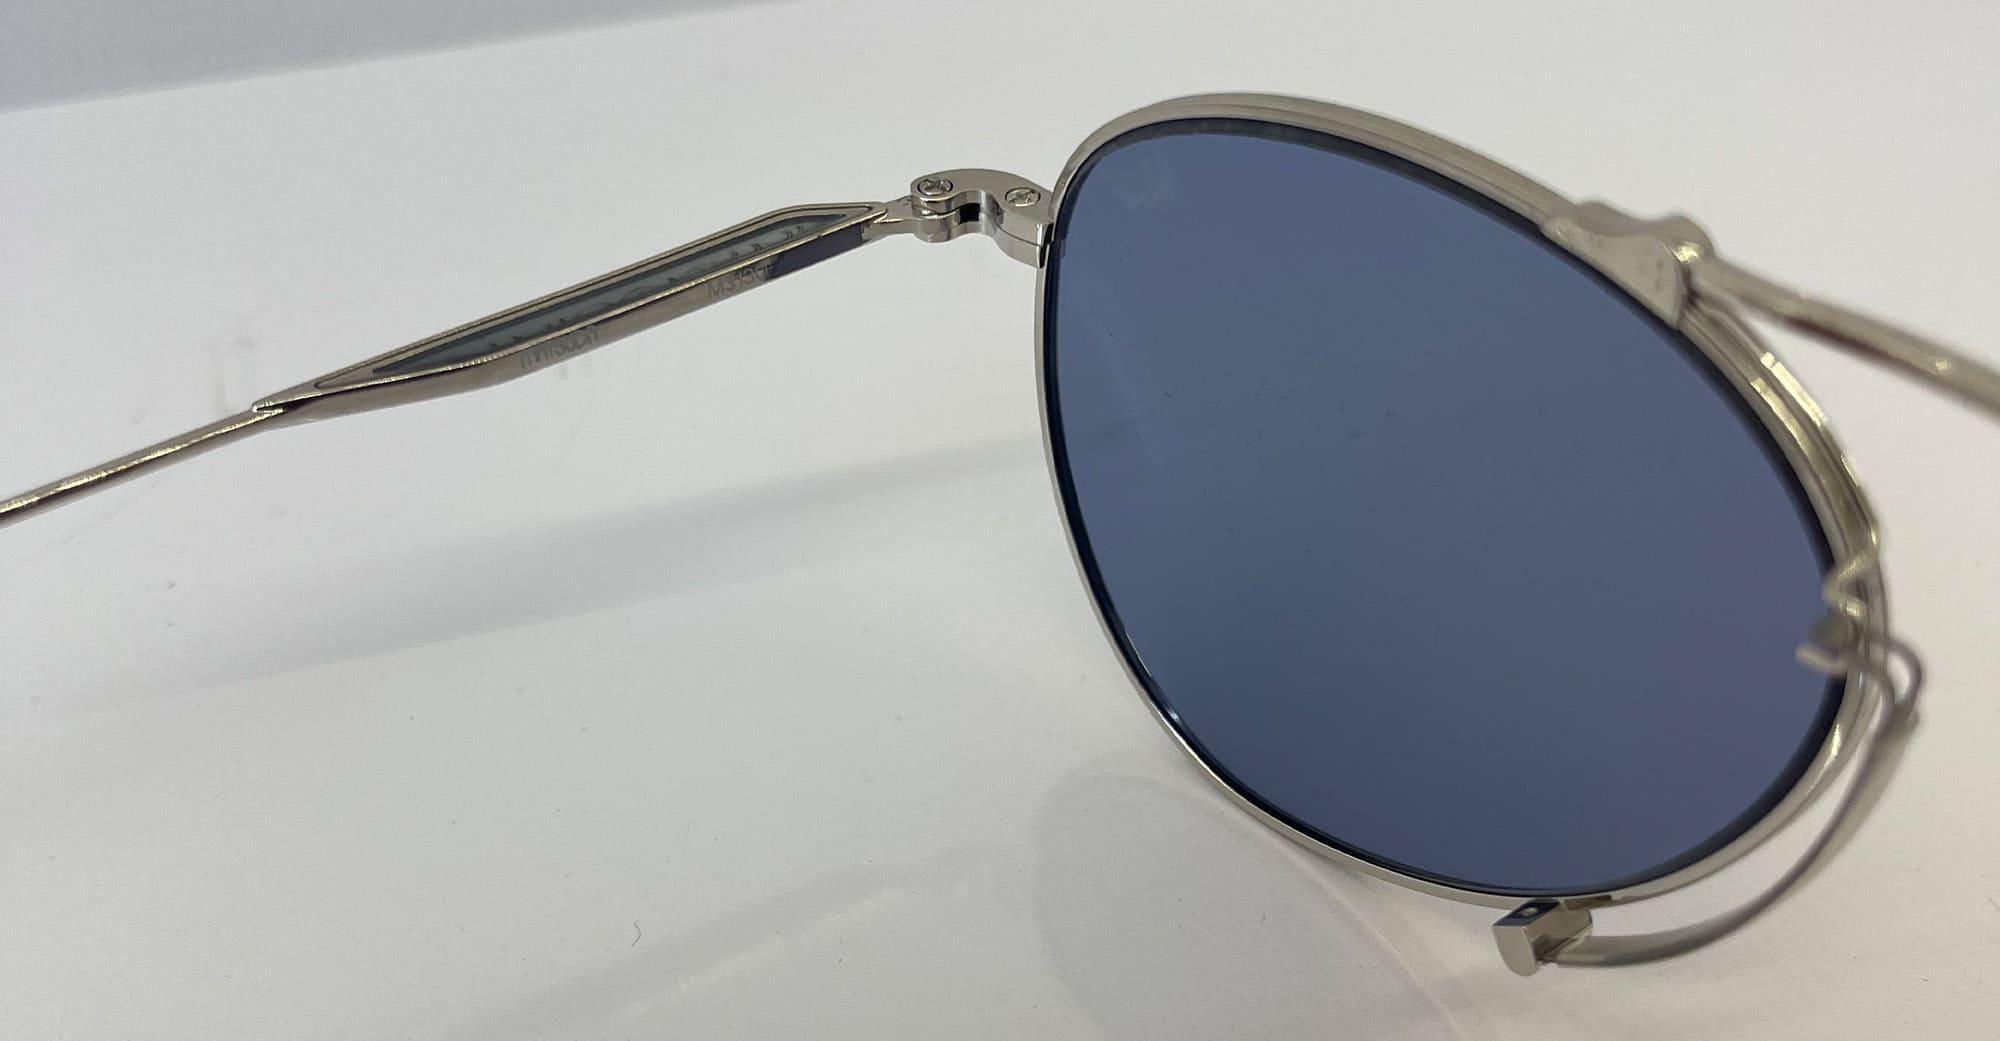 Matsuda Silver M3130 Sunglasses